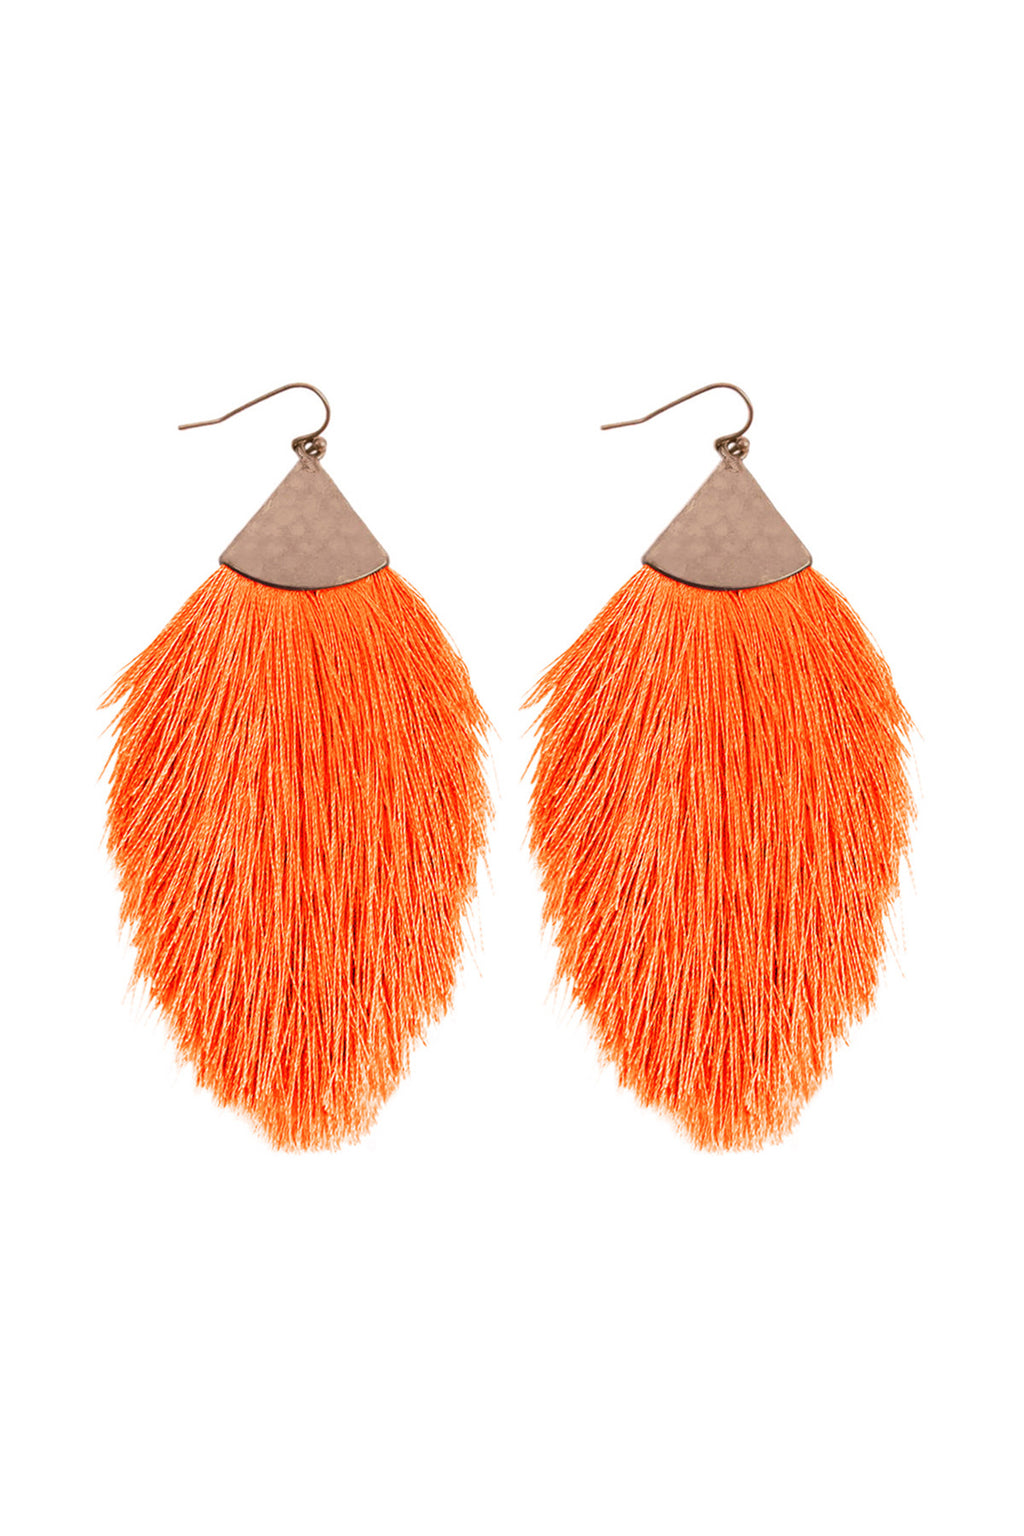 Neon Orange Tassel with Hammered Metal Hook Drop Earrings - Pack of 6